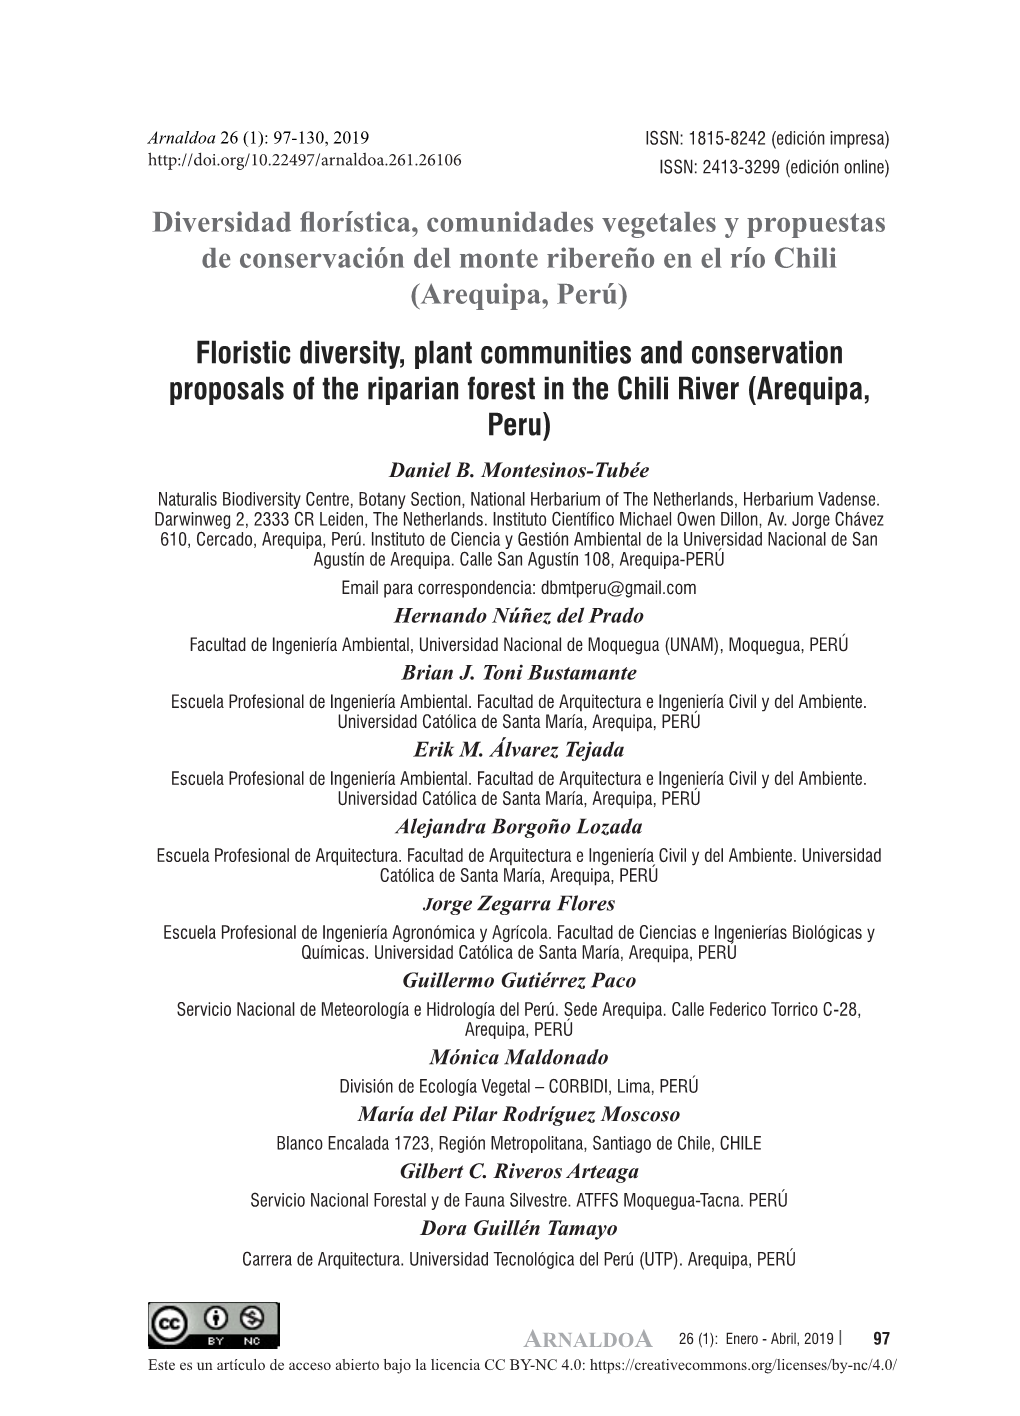 Diversidad Florística, Comunidades Vegetales Y Propuestas De Conservación Del Monte Ribereño En El Río Chili (Arequipa